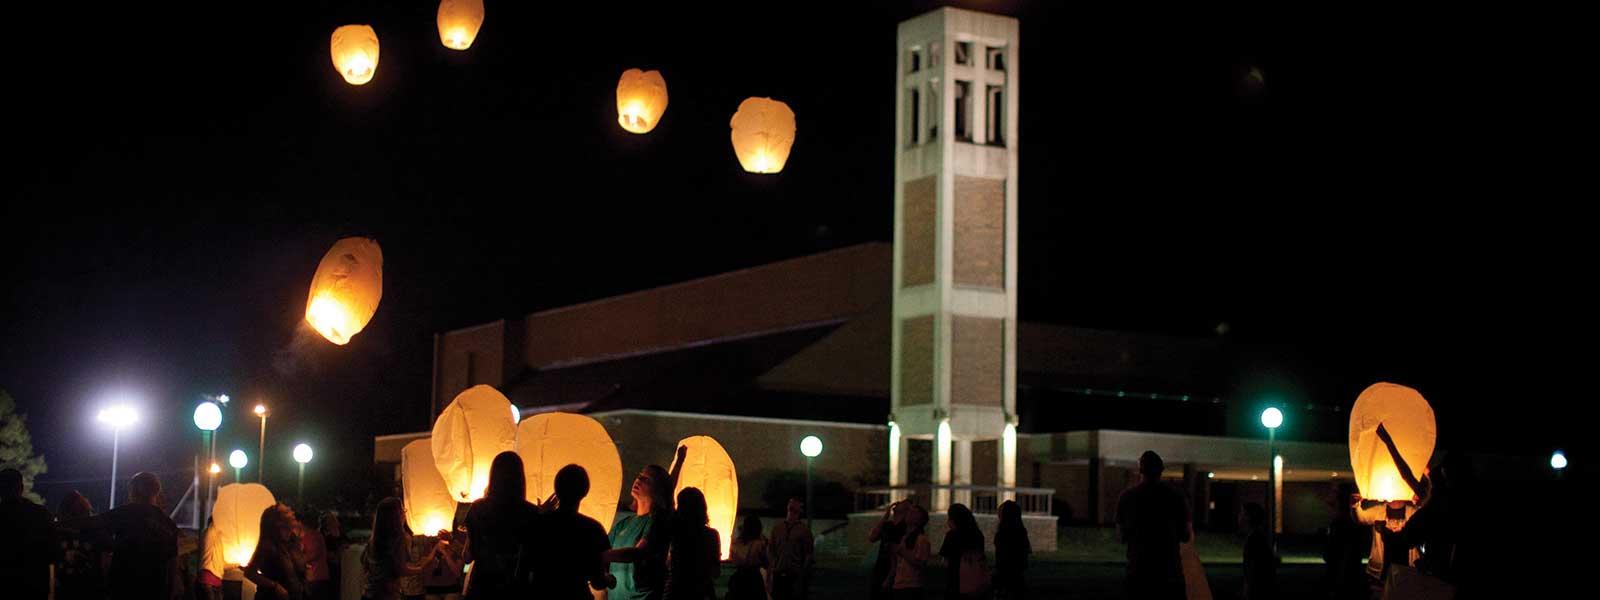 学生s release lanterns into night sky in front of bell tower